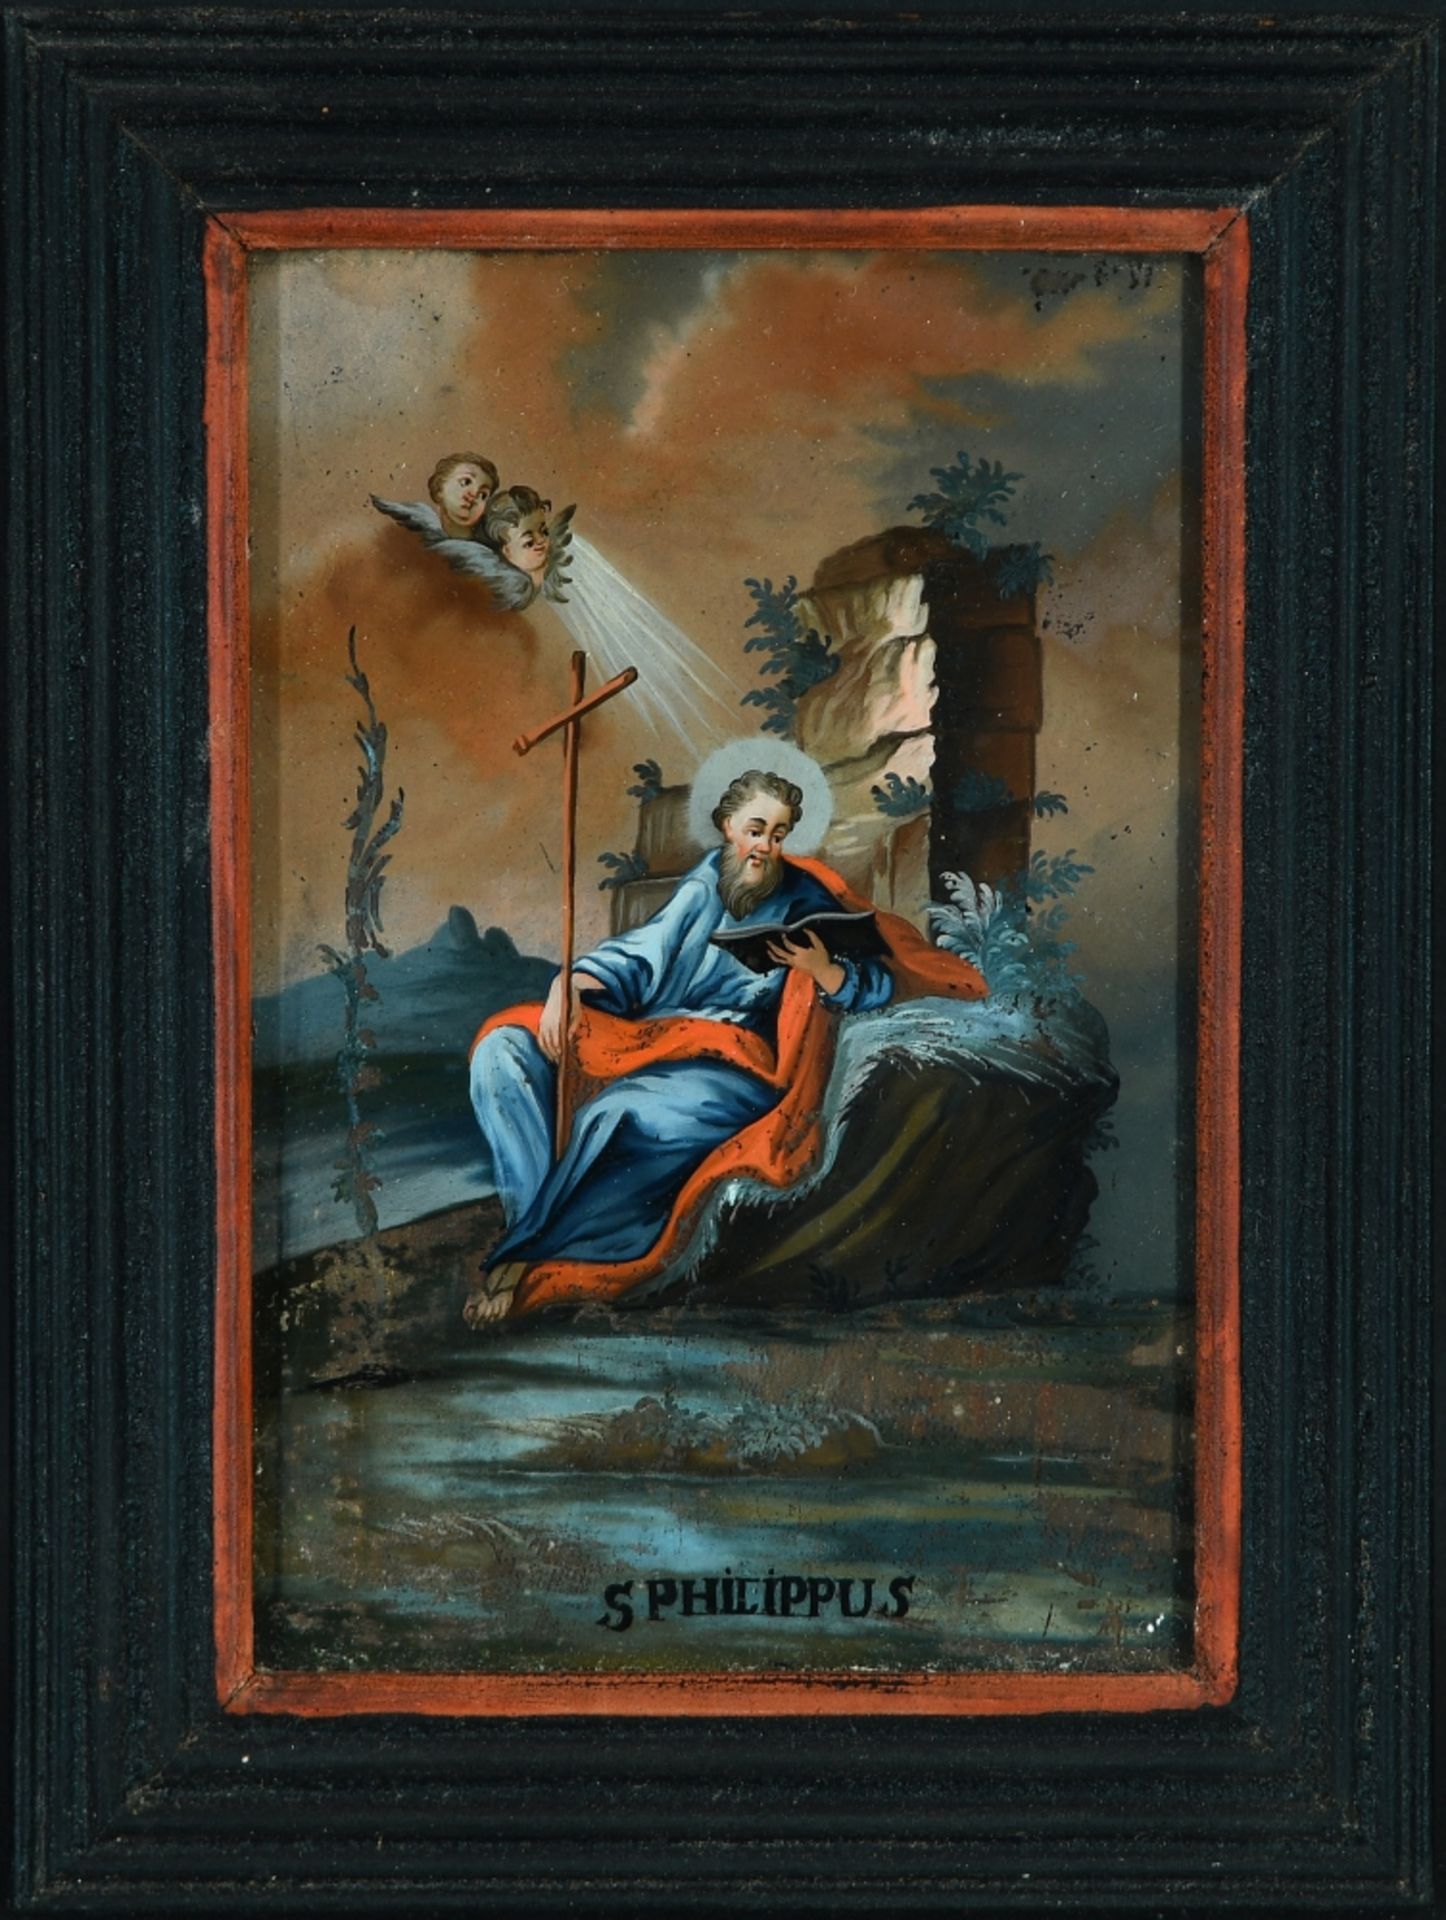 Hinterglasmalerei "S. Philippus"